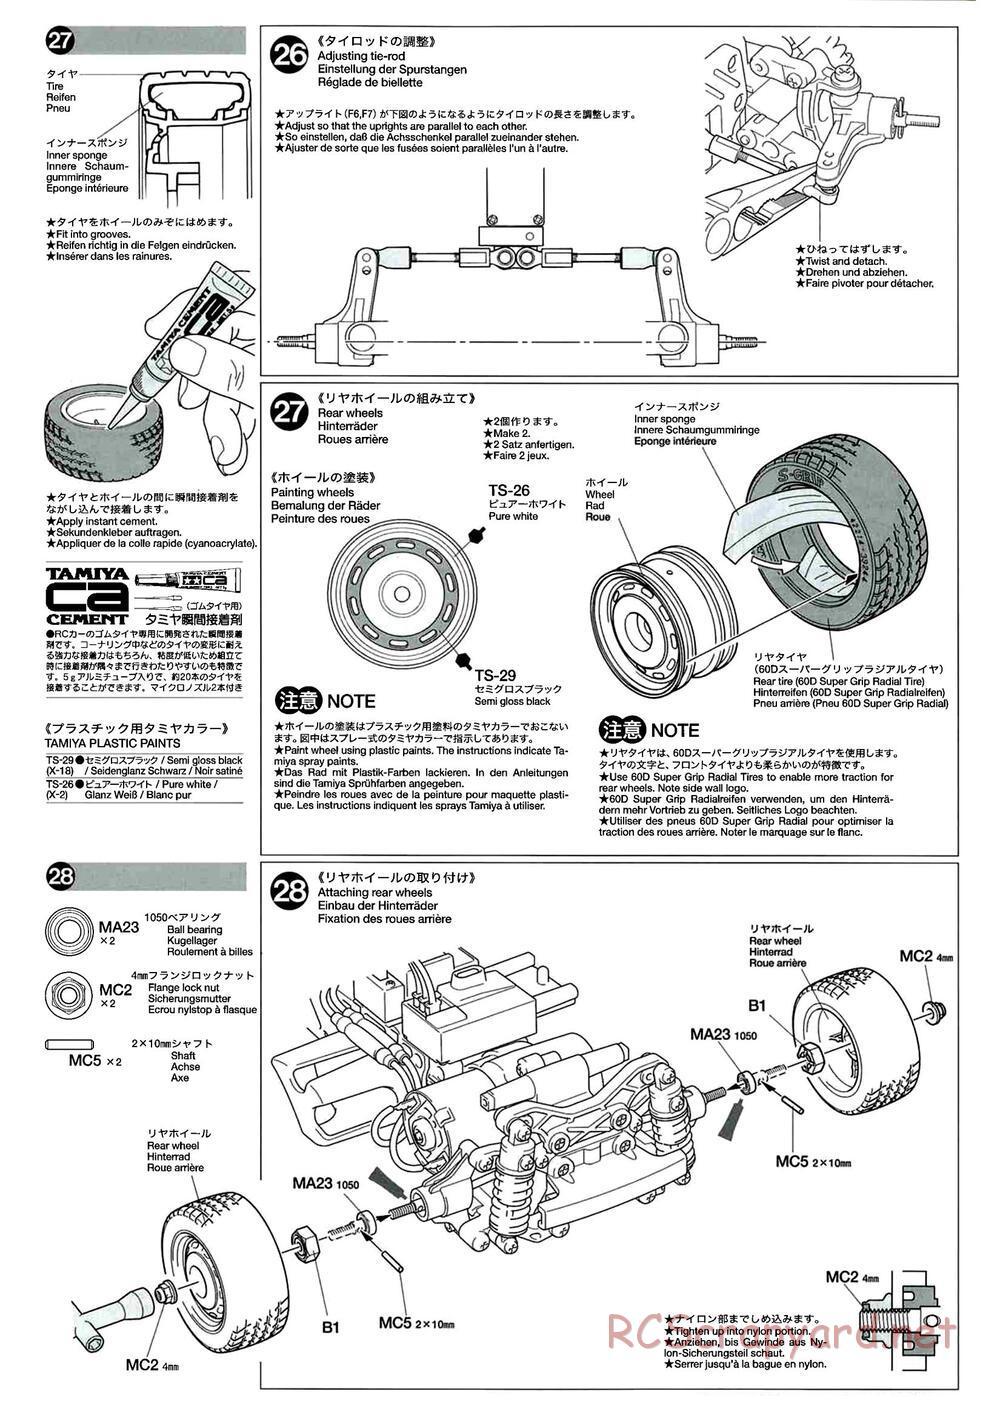 Tamiya - M-04L Chassis - Manual - Page 14